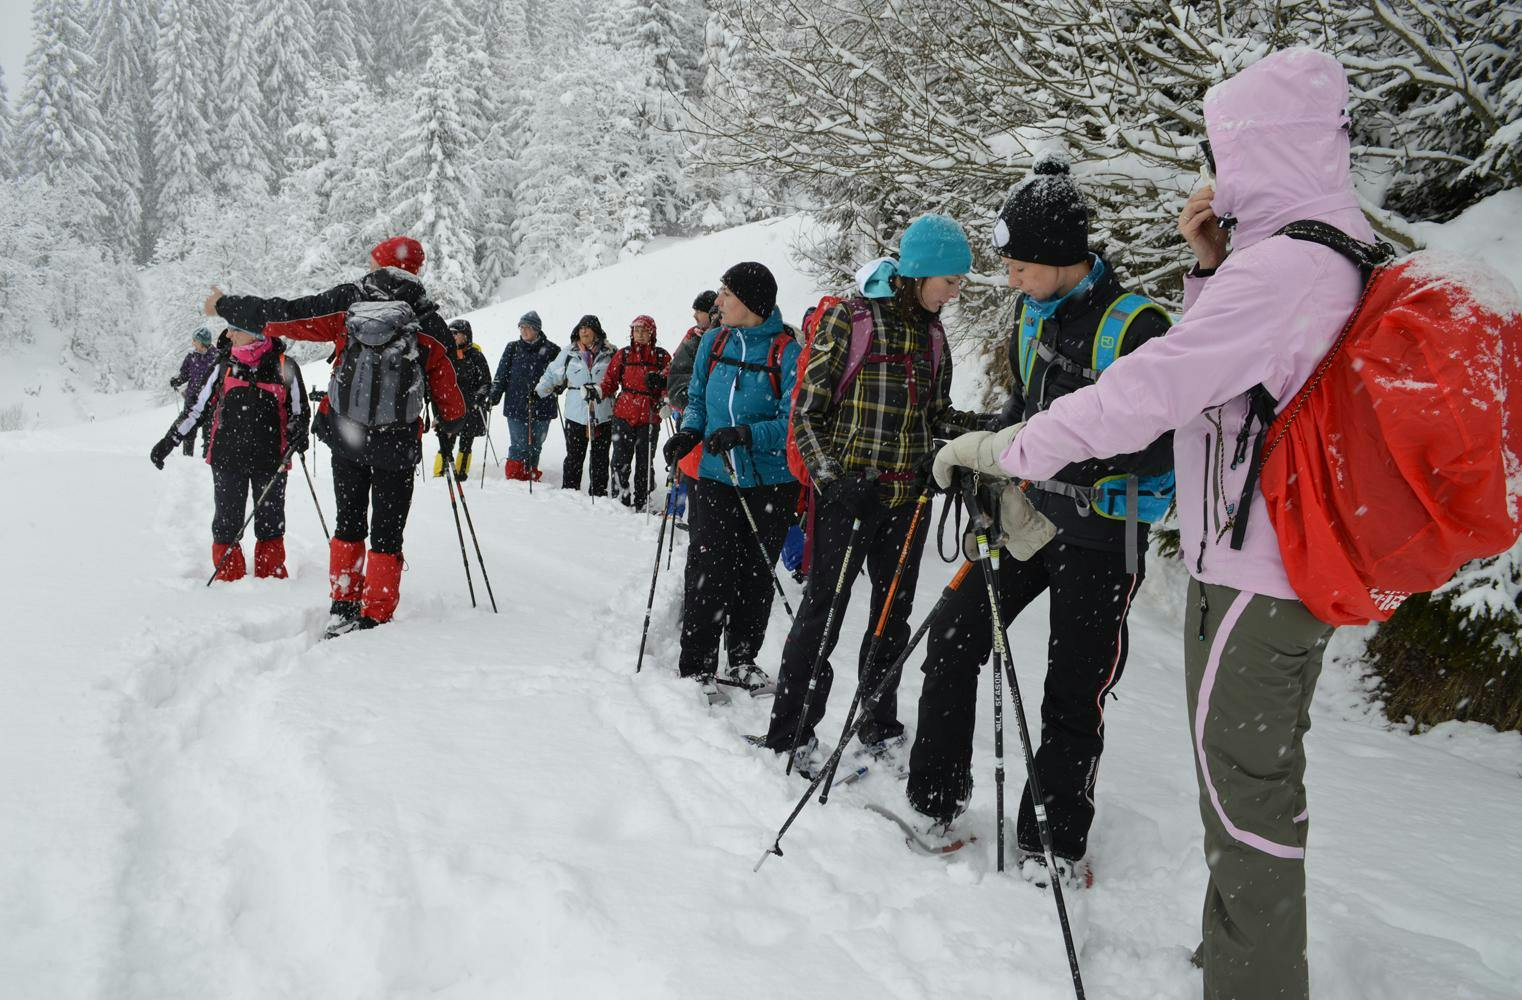 Winterwandern | zauberhafte Schneeschuhtour an der Rax